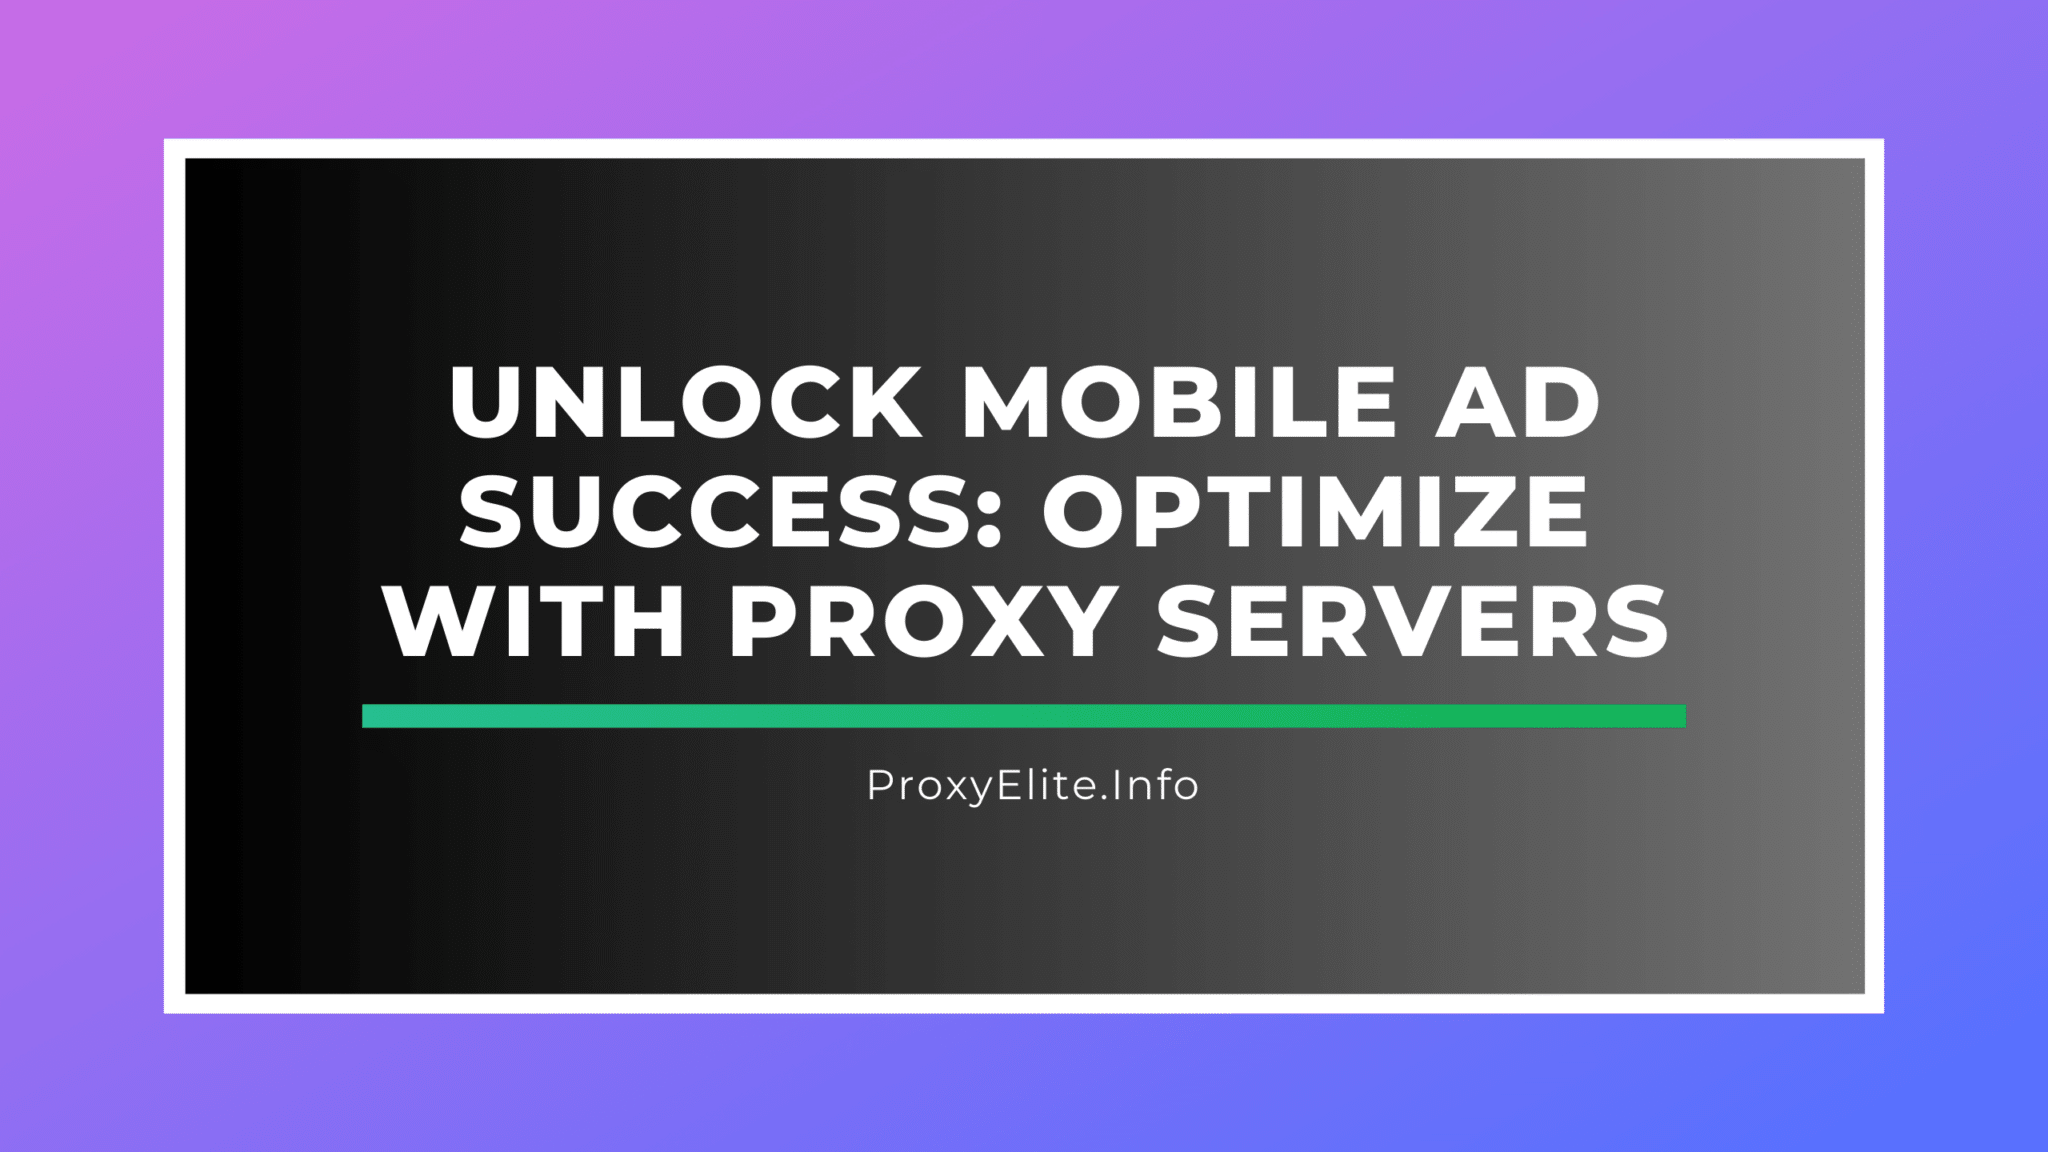 Desbloqueie o sucesso dos anúncios para celular: otimize com servidores proxy